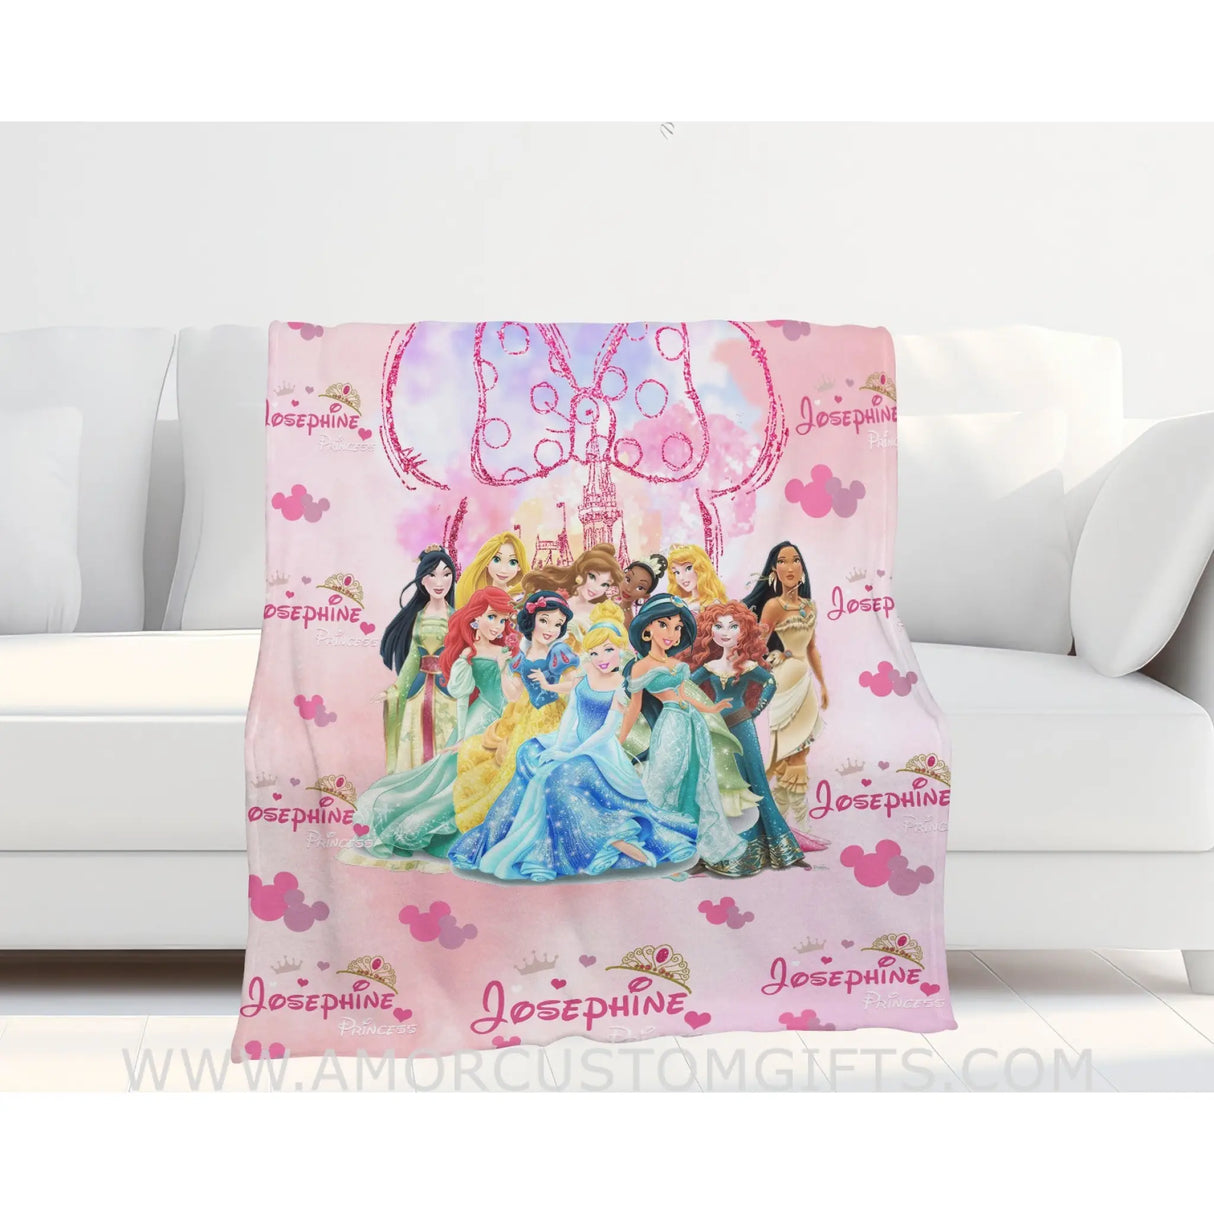 Blanket Personalized Name Disney Princess Girl Blanket, Baby Princess Fleece Blankets, Gift For Baby Girl